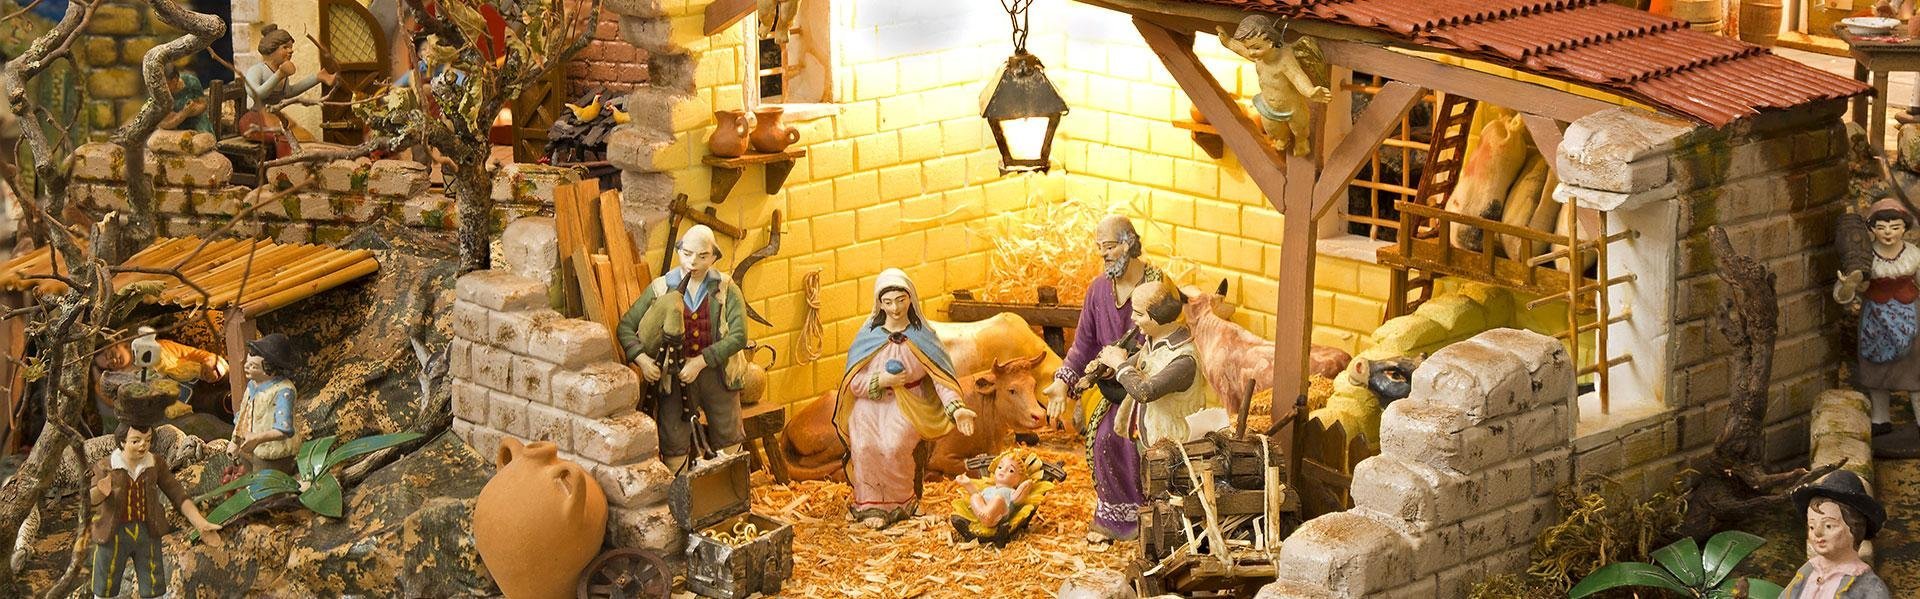 Kerststal in Napels, Italië